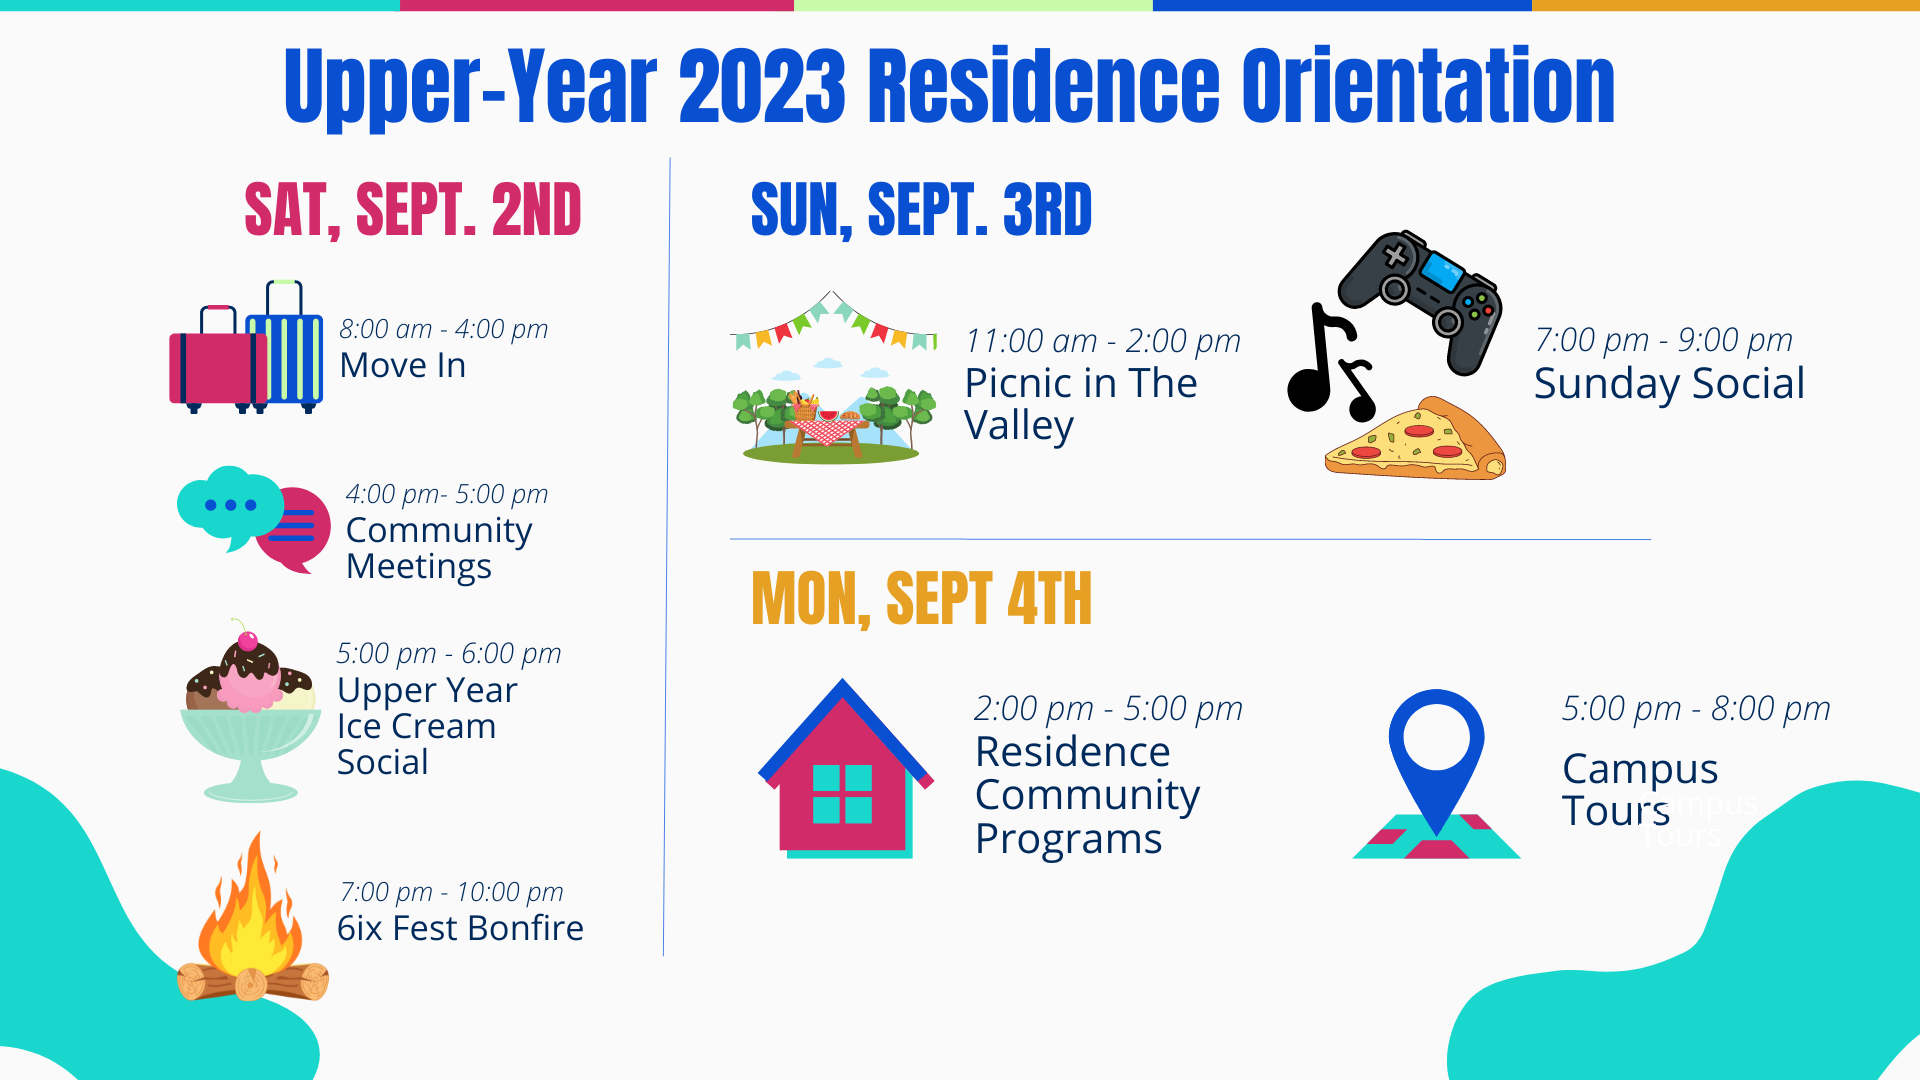 Upper Year Residence Orientation Schedule